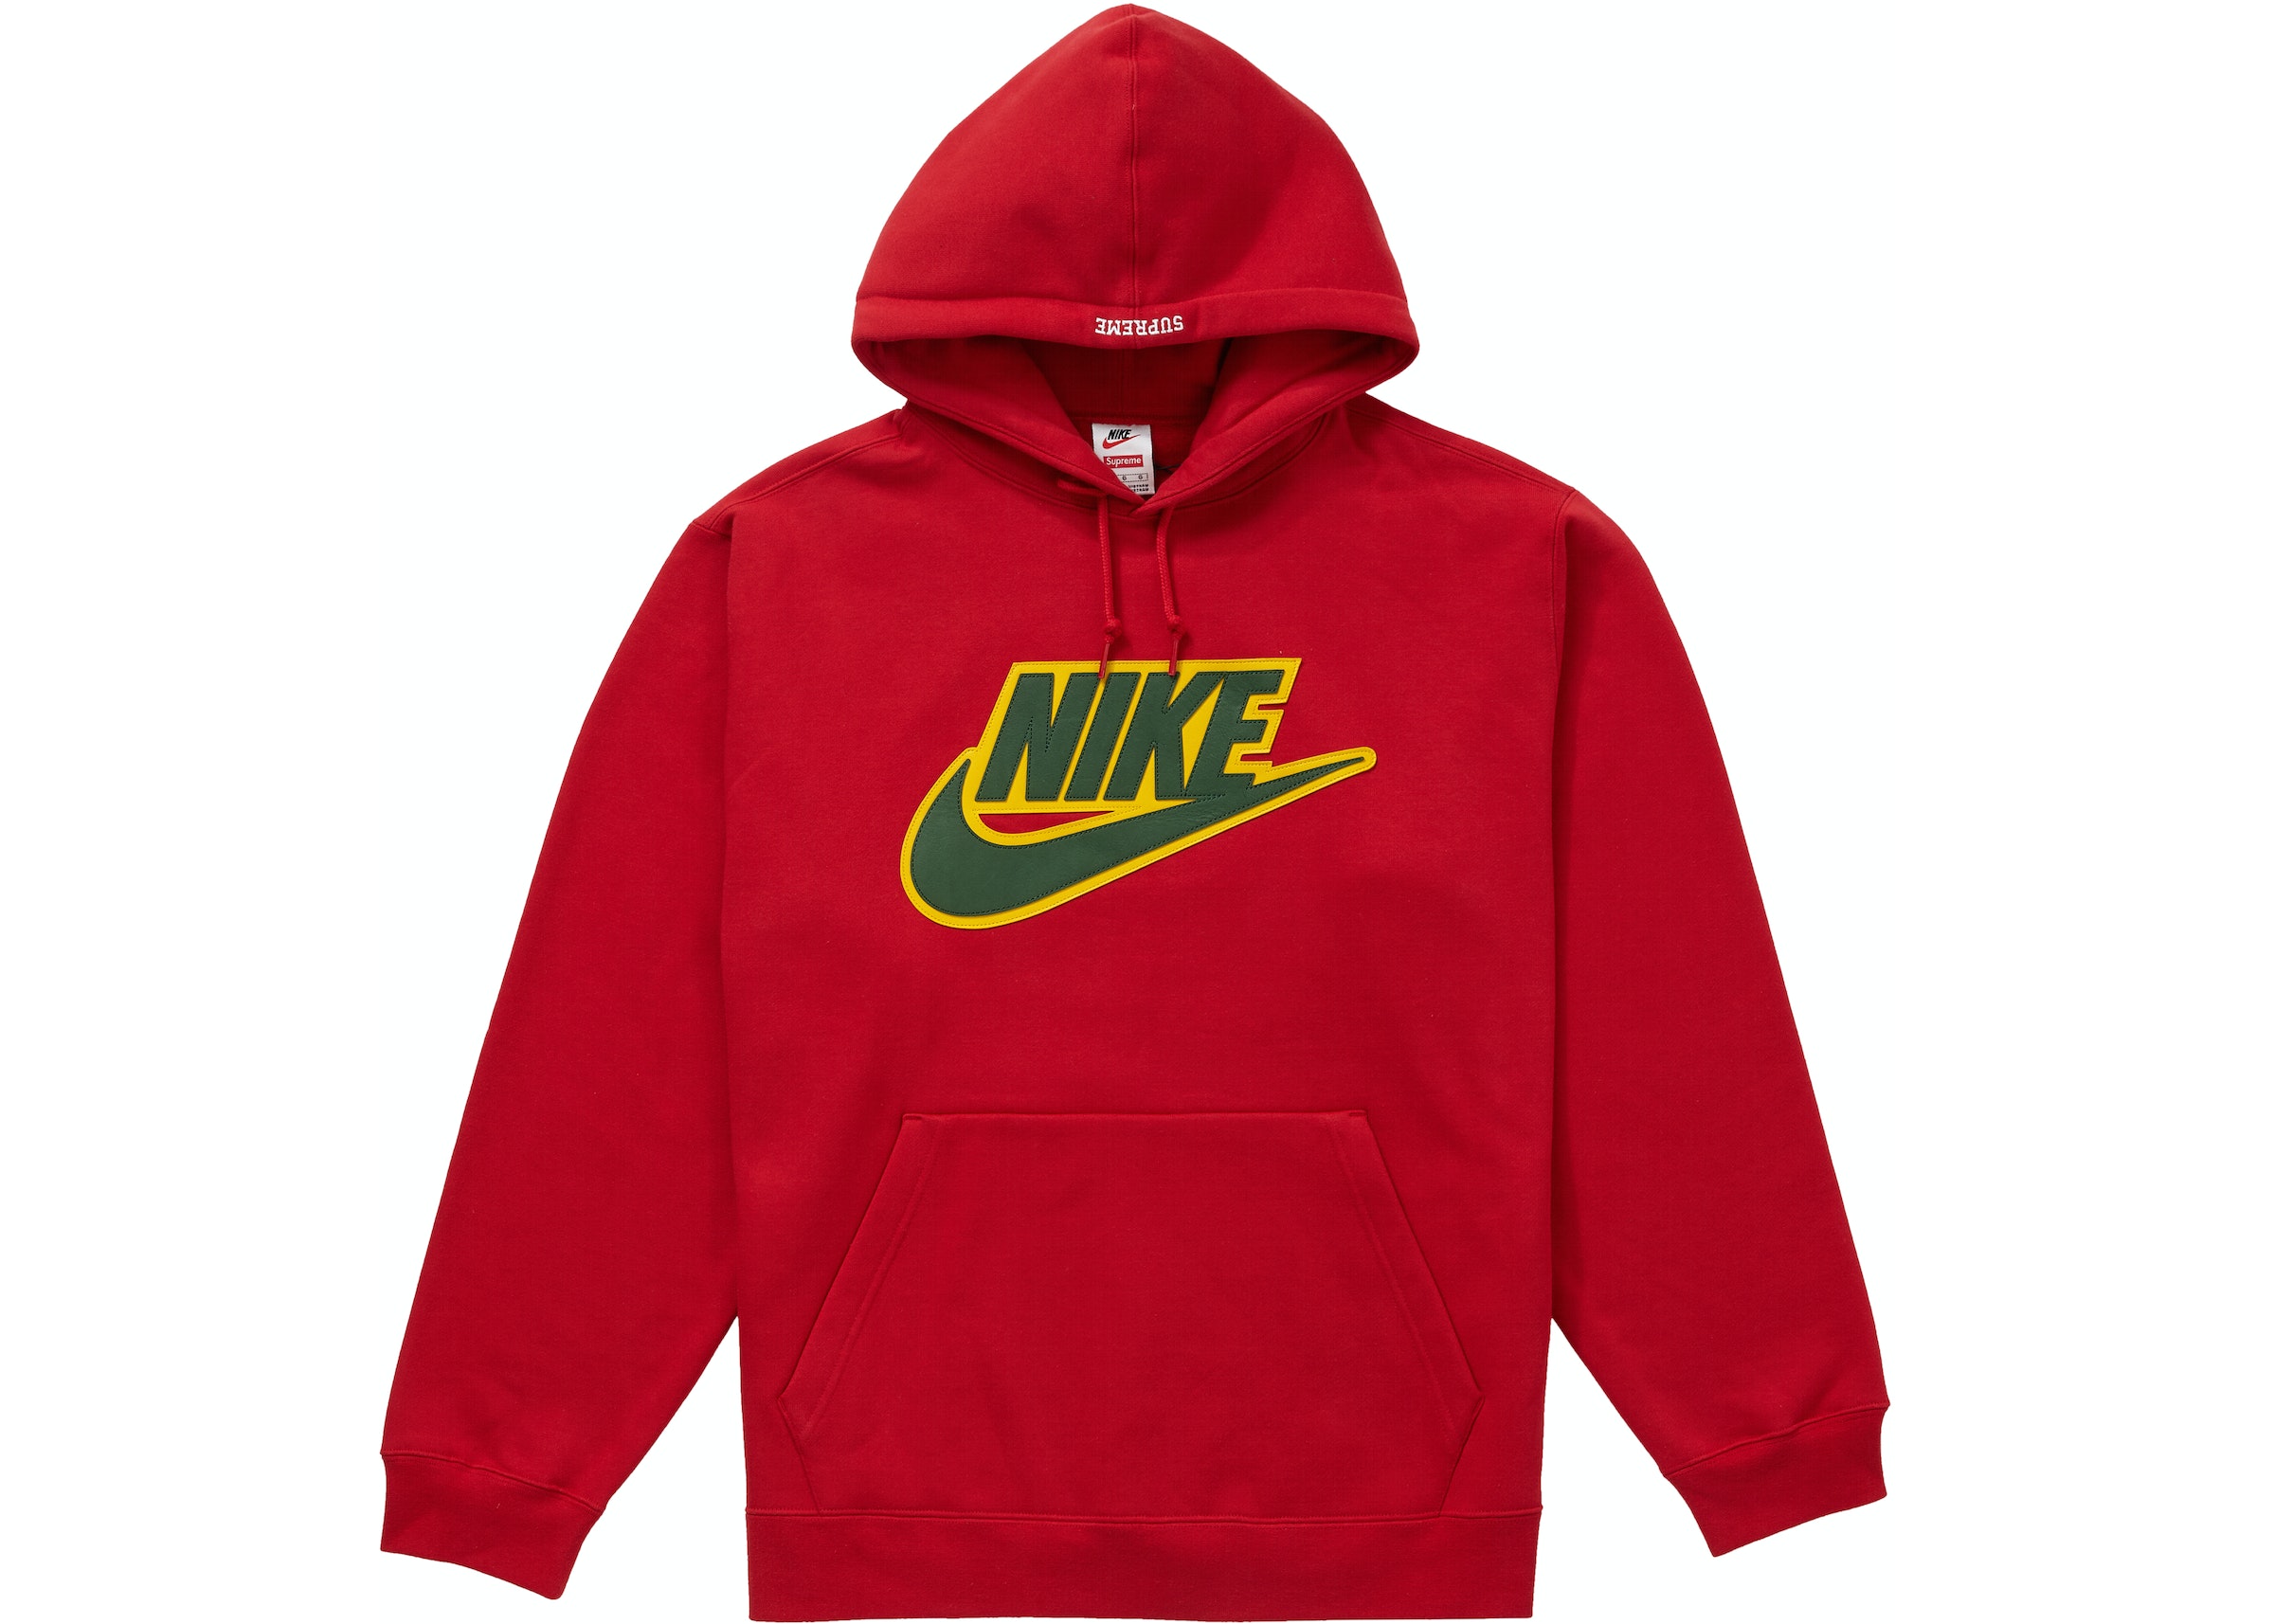 Típicamente revisión en voz alta Supreme Nike Leather Applique Hooded Sweatshirt Red - FW19 Men's - US